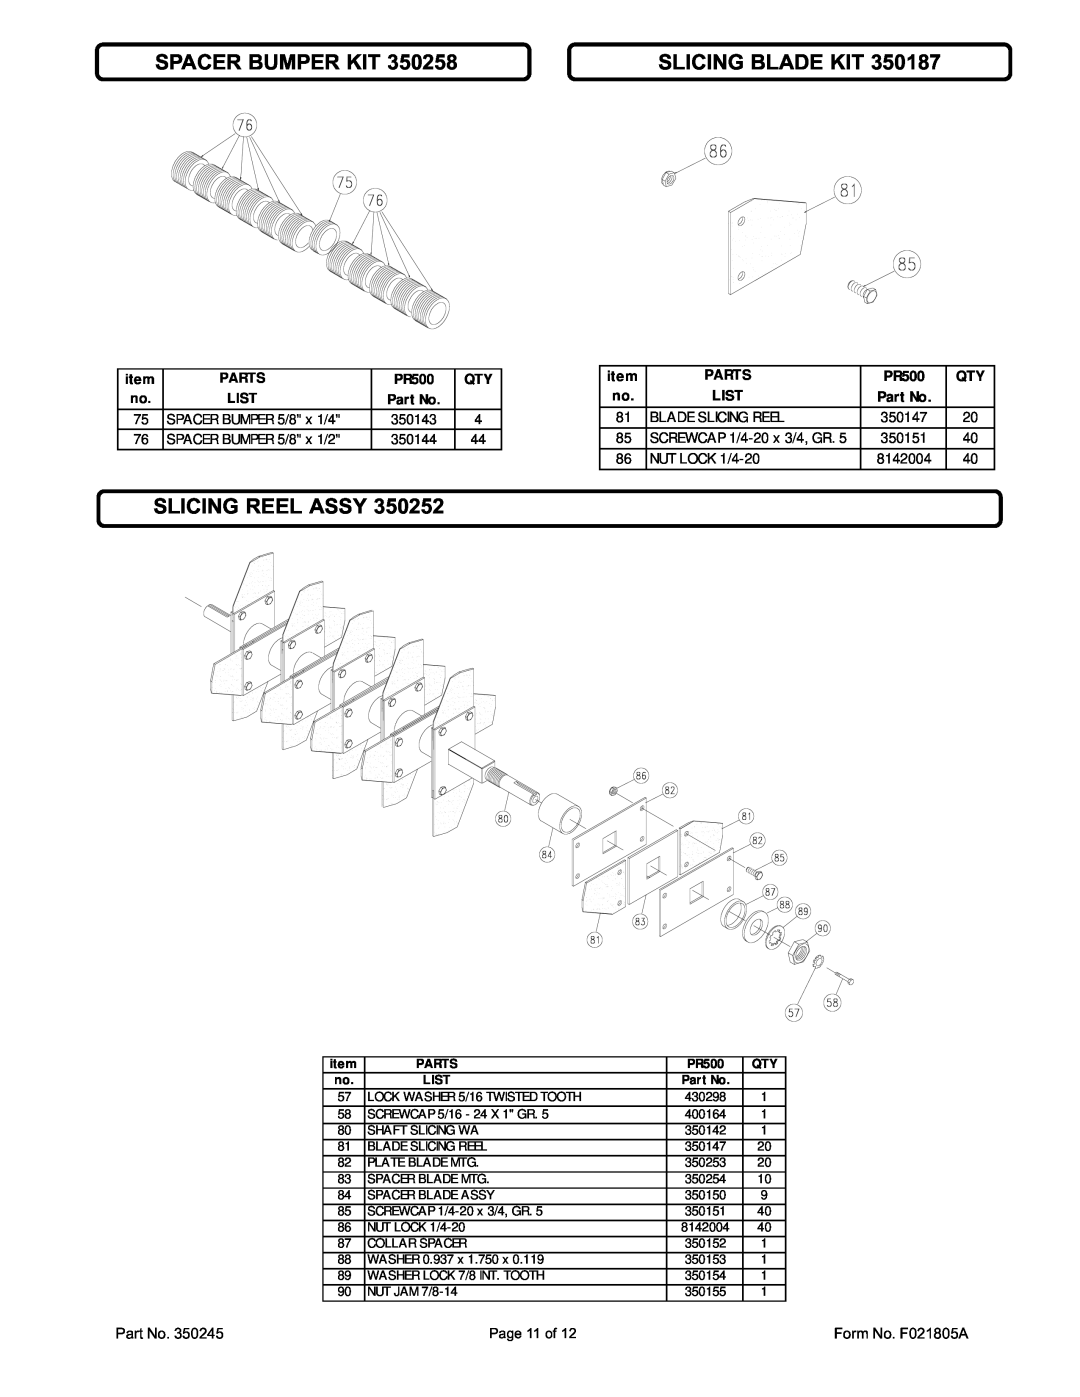 Billy Goat CR550HCV specifications Spacer Bumper Kit, Slicing Blade Kit, Slicing Reel Assy, Parts, PR500 